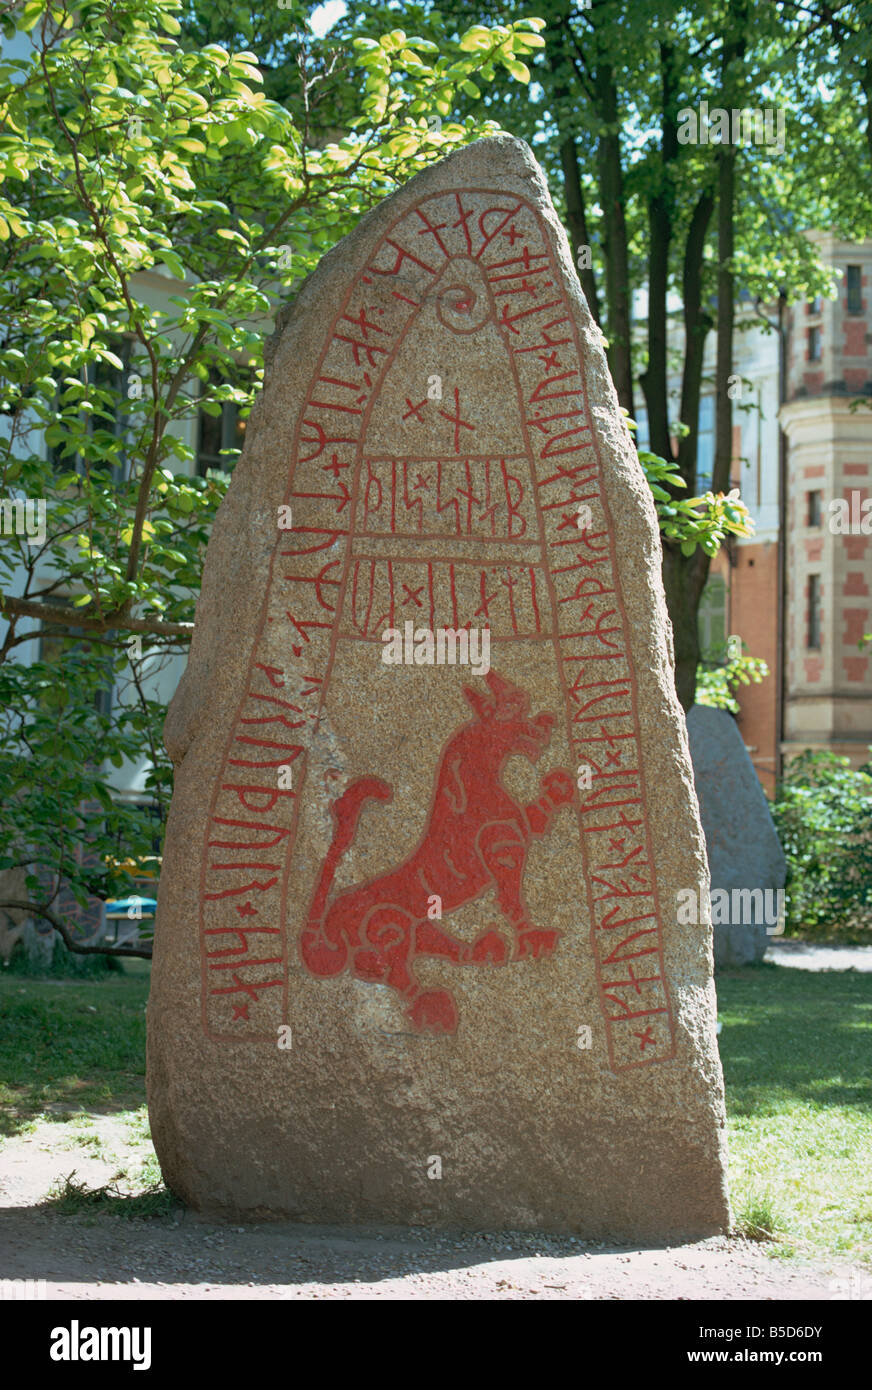 Mythologisches Tier ähnlich wie ein Wolf auf eine Rune an Skarby, 1000 n. Chr. Lund, Schweden, Skandinavien, Europa aus Stein gefunden Stockfoto